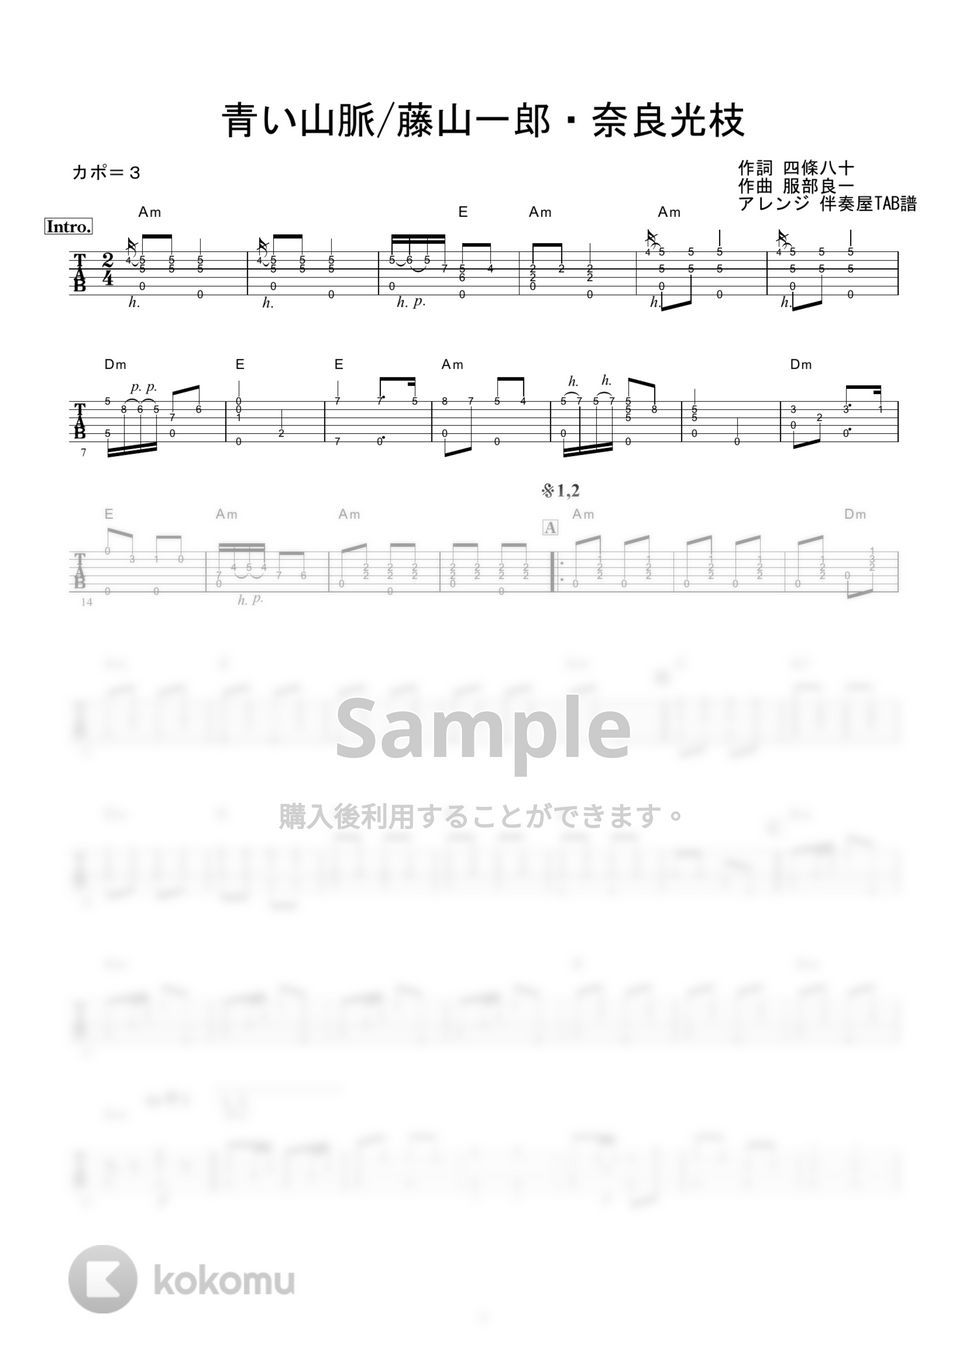 藤山一郎・奈良光枝 - 青い山脈 (ギター伴奏/イントロ・間奏ソロギター) by 伴奏屋TAB譜